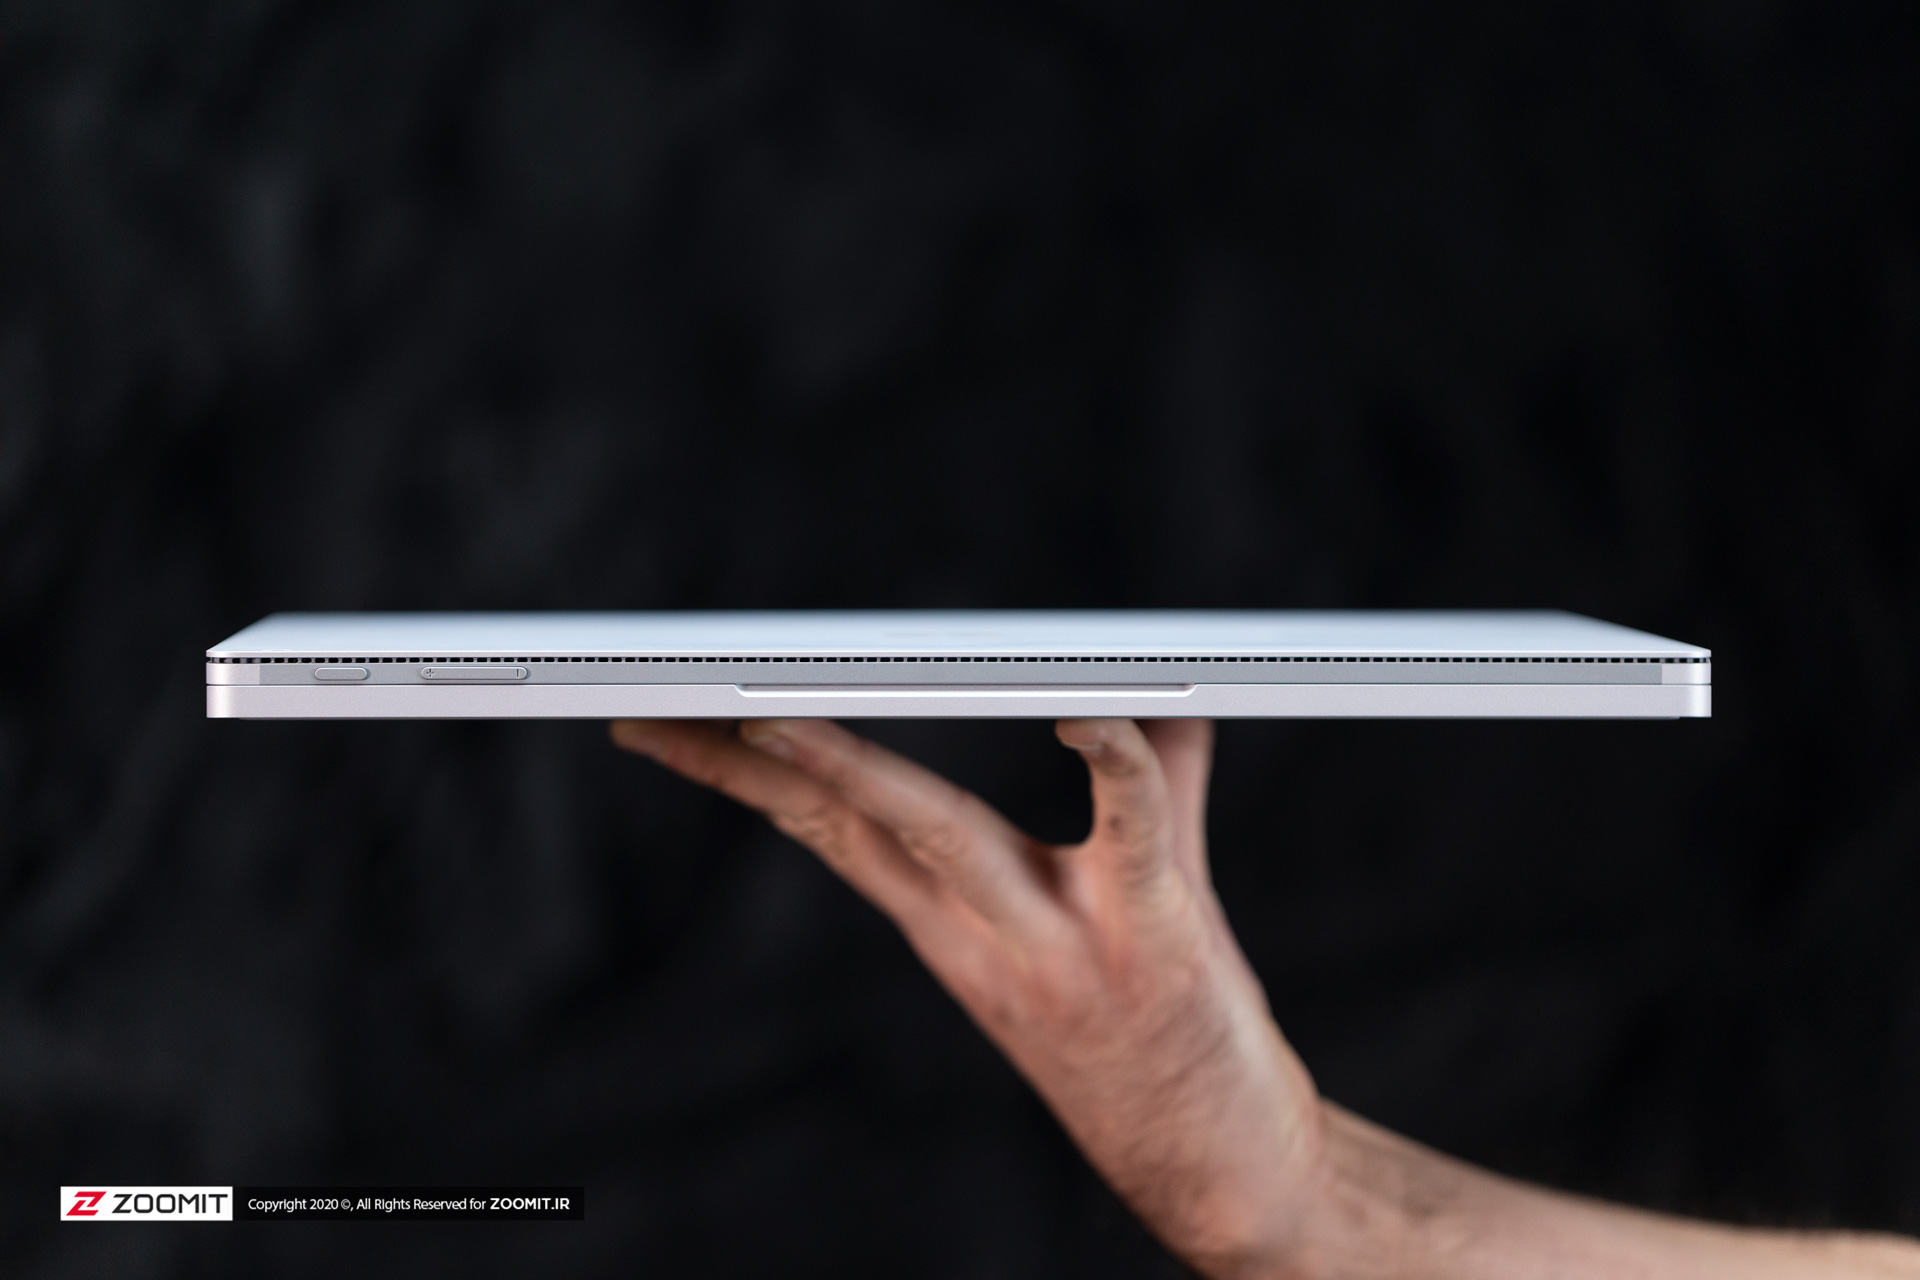 سرفیس بوک ۳ مایکروسافت / Microsoft Surface Book 3 در حالت بسته